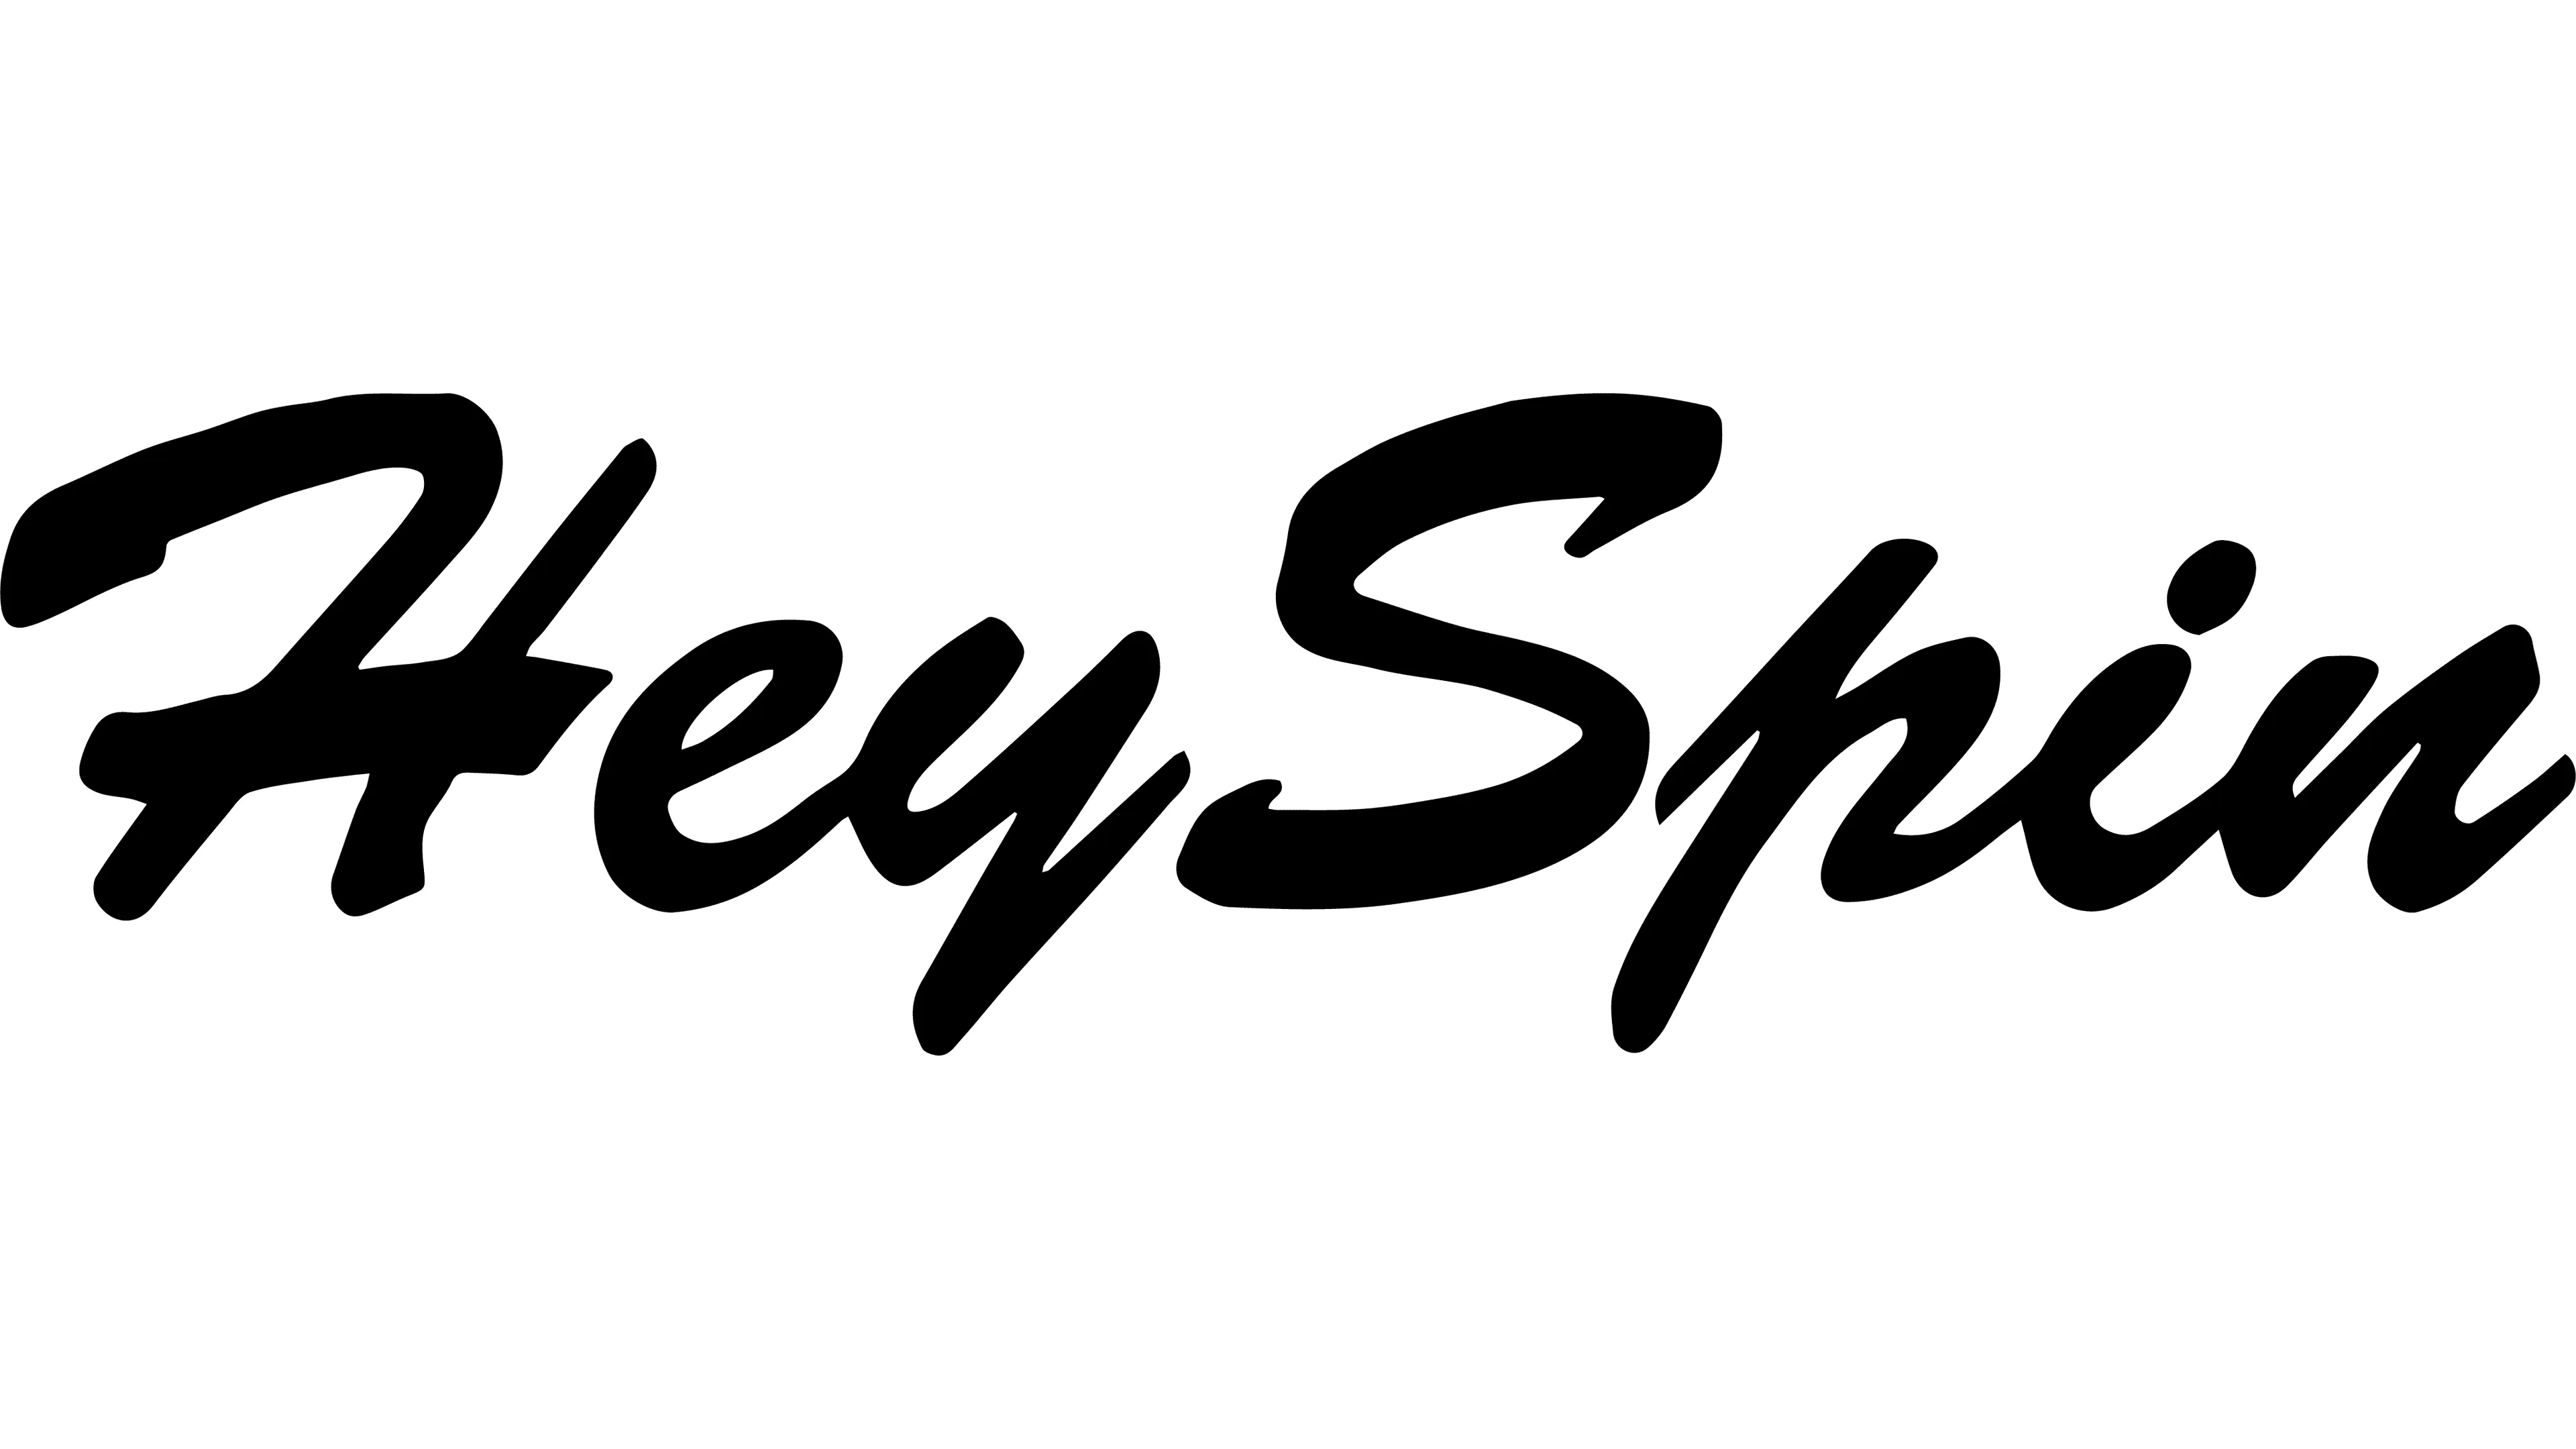 Heyspin logo